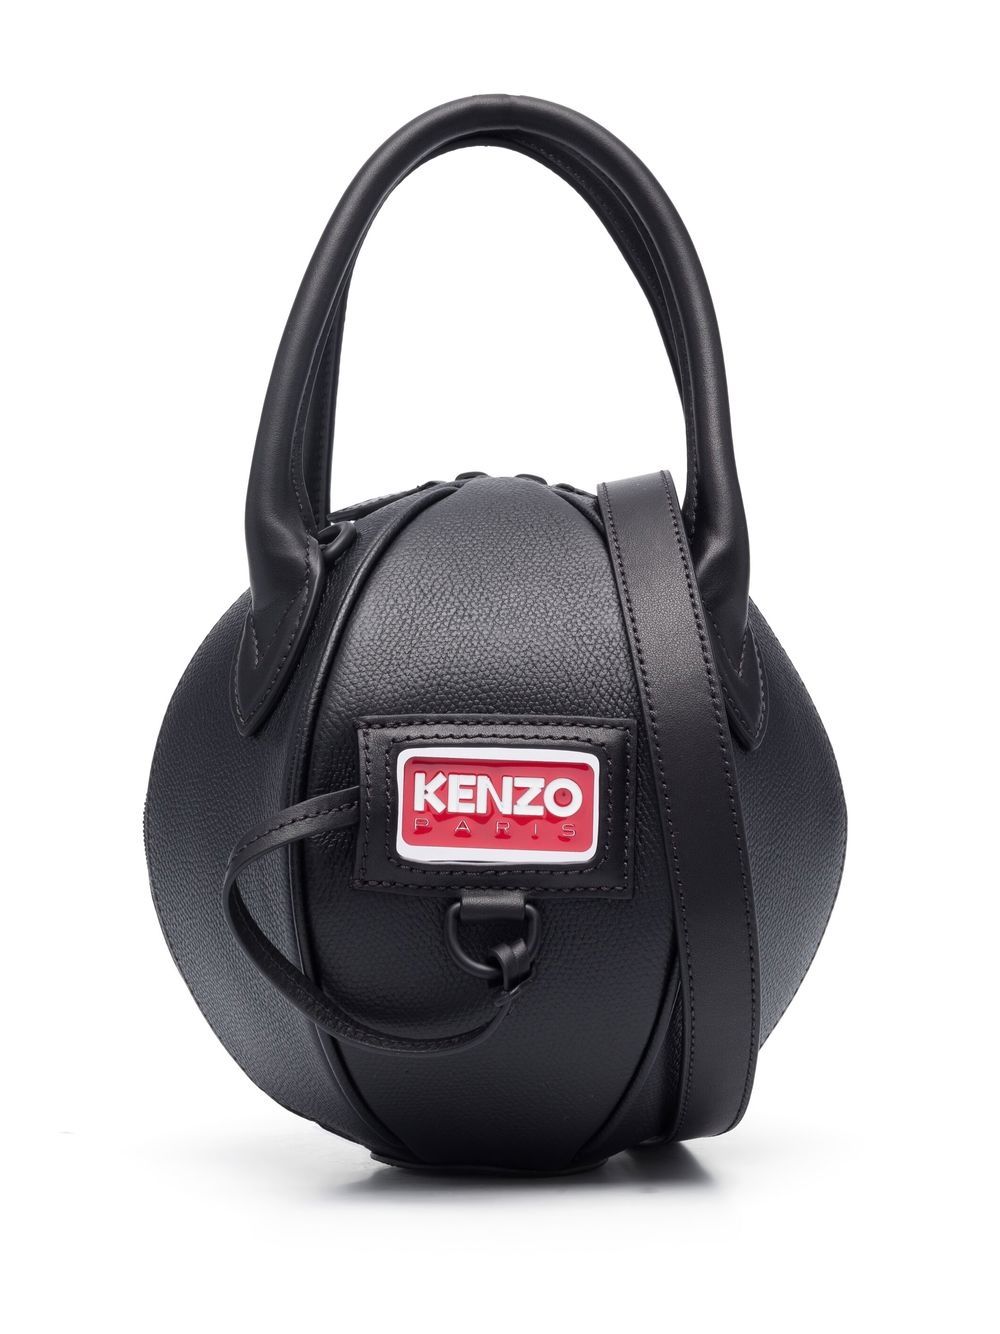 Kenzo ball-shaped tote bag - Black von Kenzo